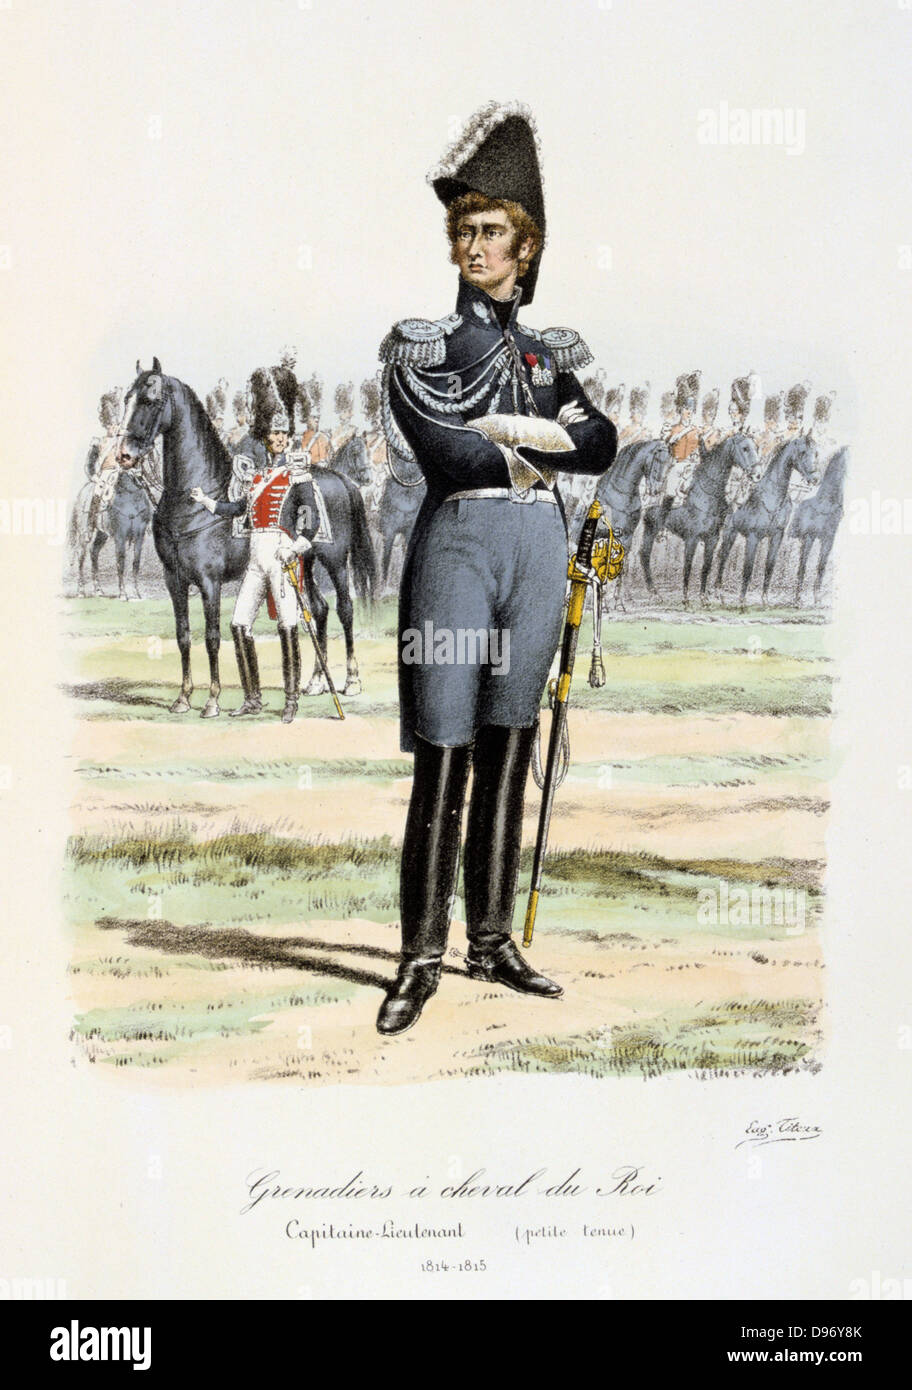 Royal Mounted Grenadiers, 1814-1815. From 'Histoire de la maison militaire du Roi de 1814 a 1830' by Eugene Titeux, Paris, 1890. Stock Photo